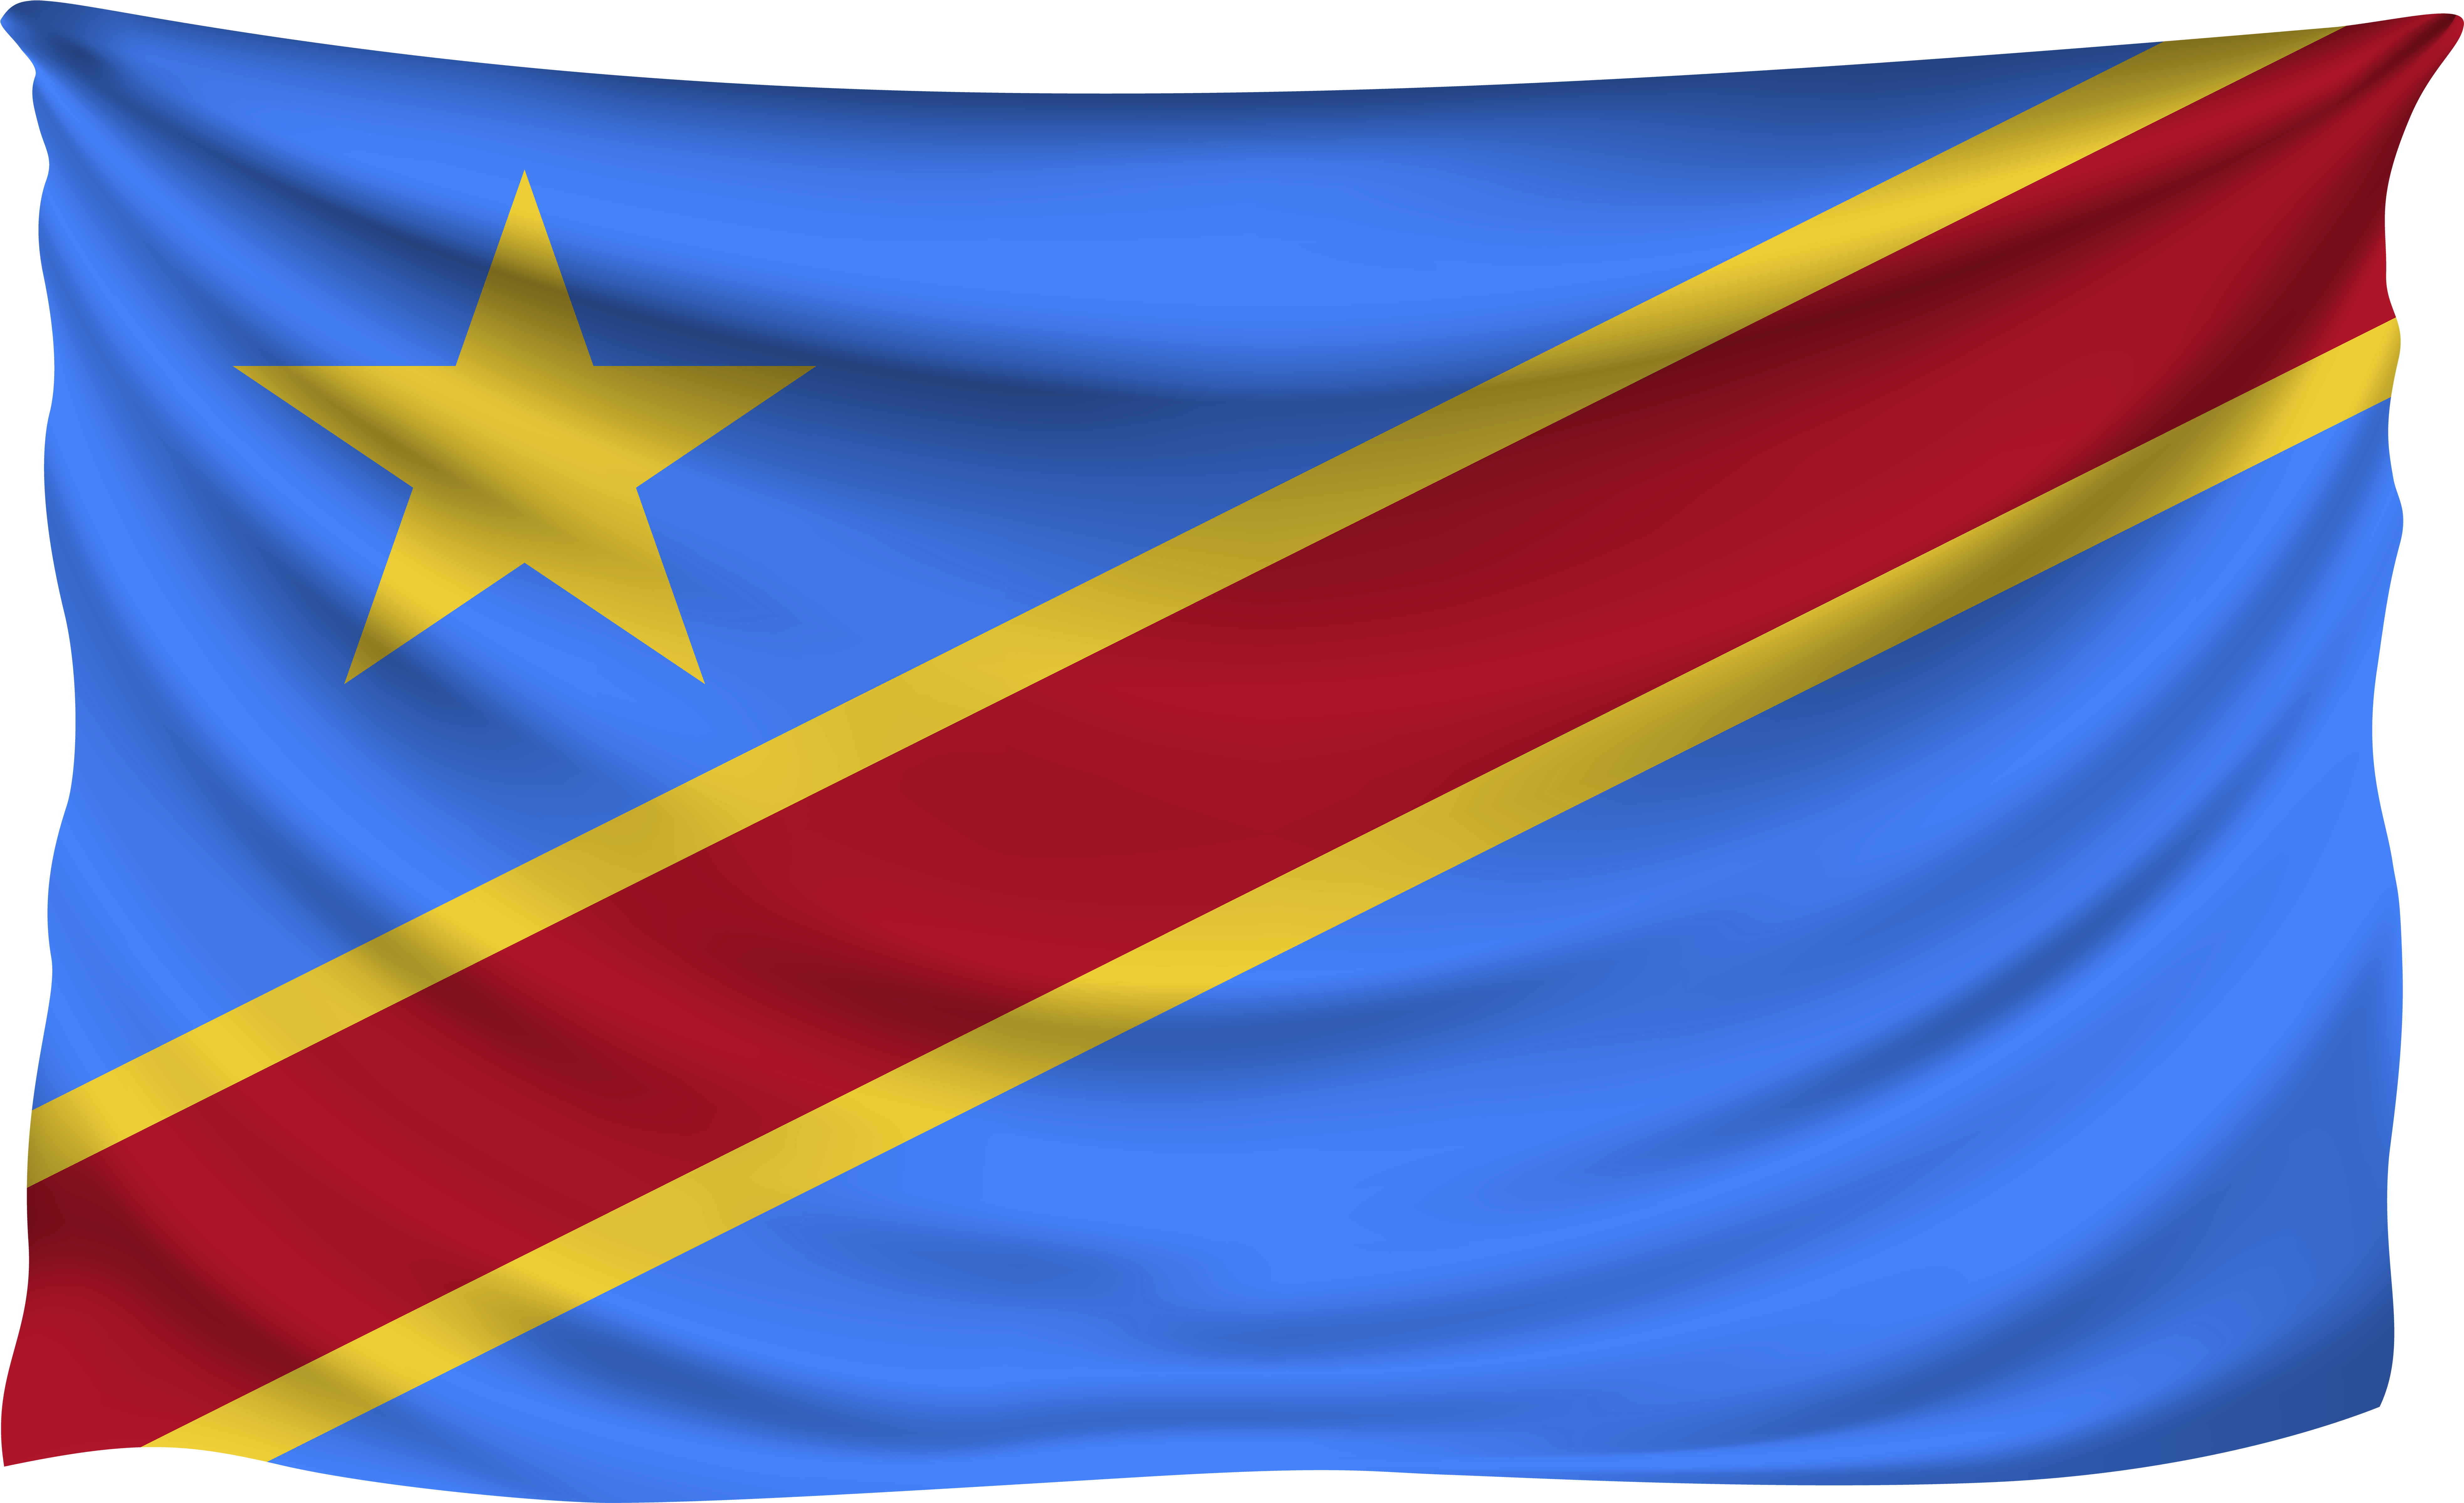 Democratic Republicof Congo Flag Waving